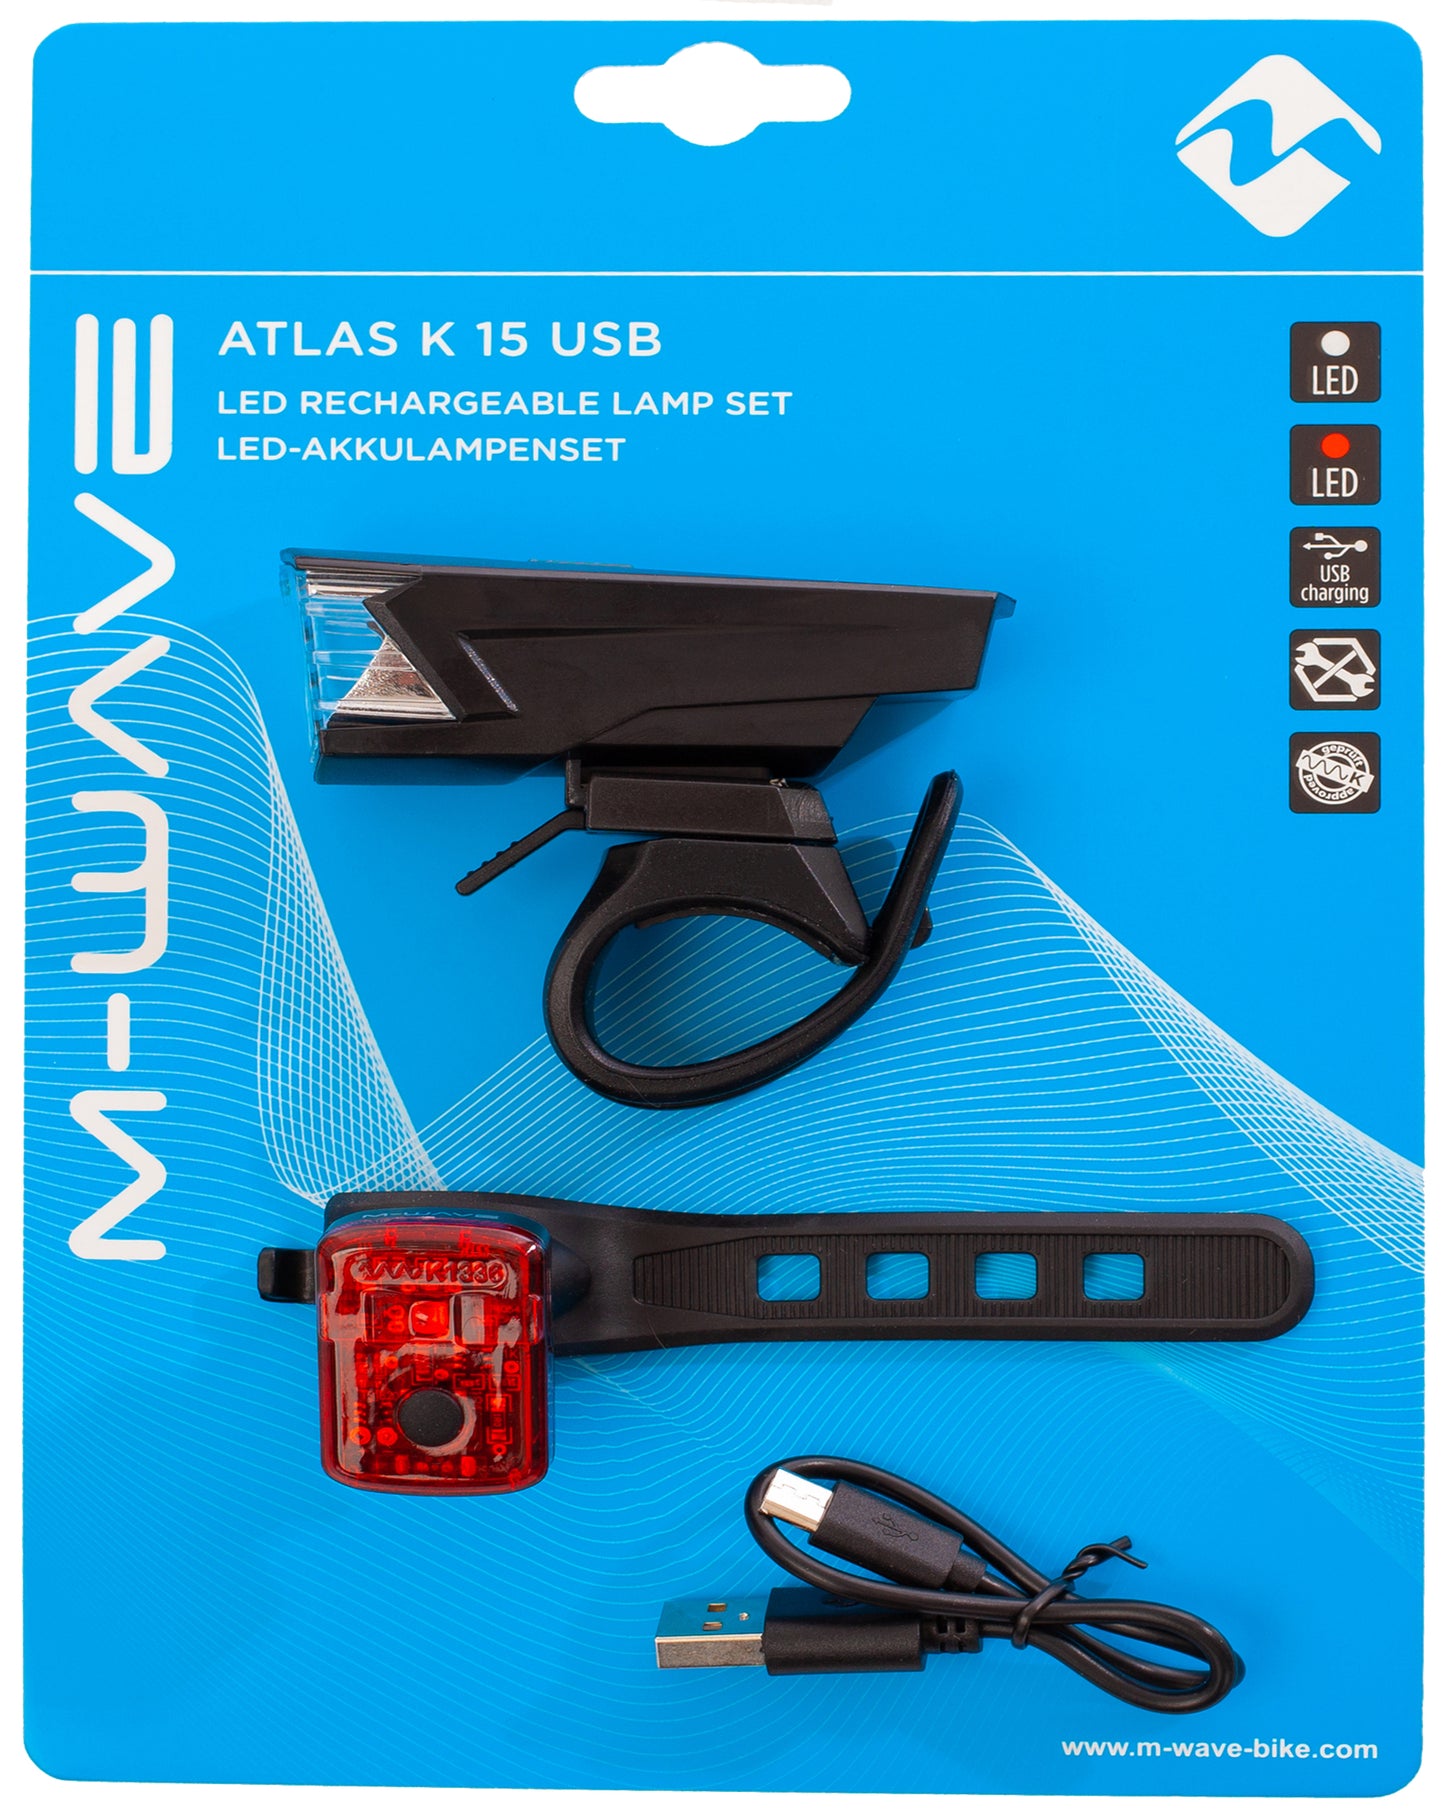 LED-Akku-Lichtset Atlas K 15 USB